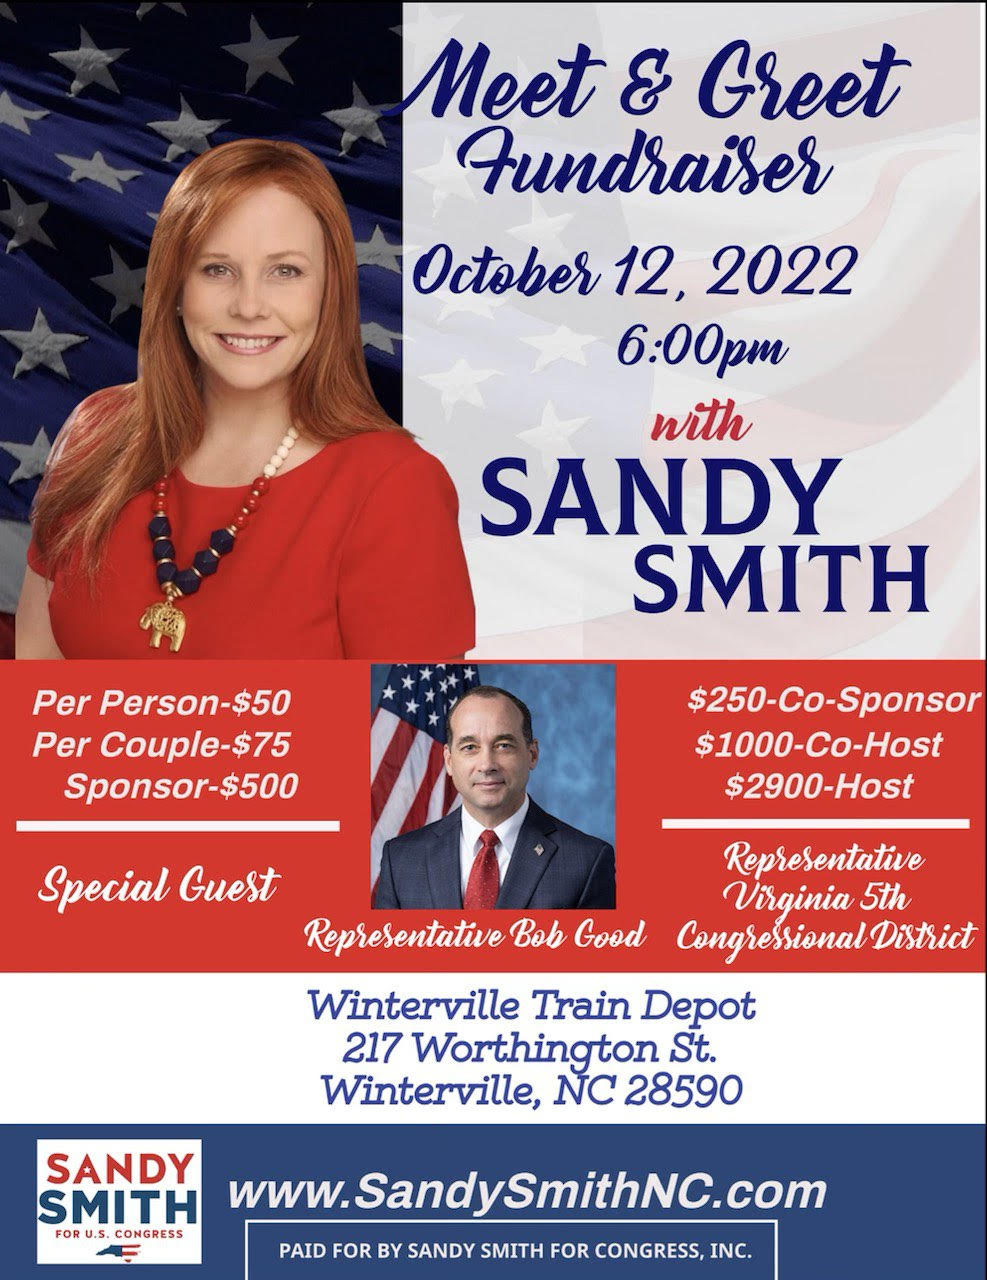 Sandy Smith Fundraiser